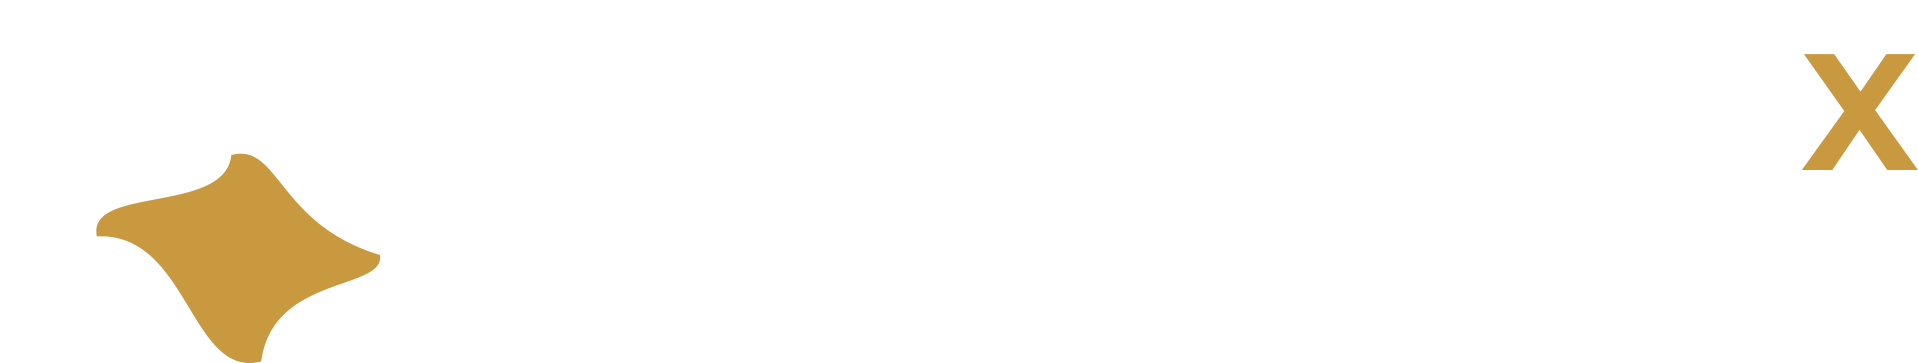 Polcrux Group